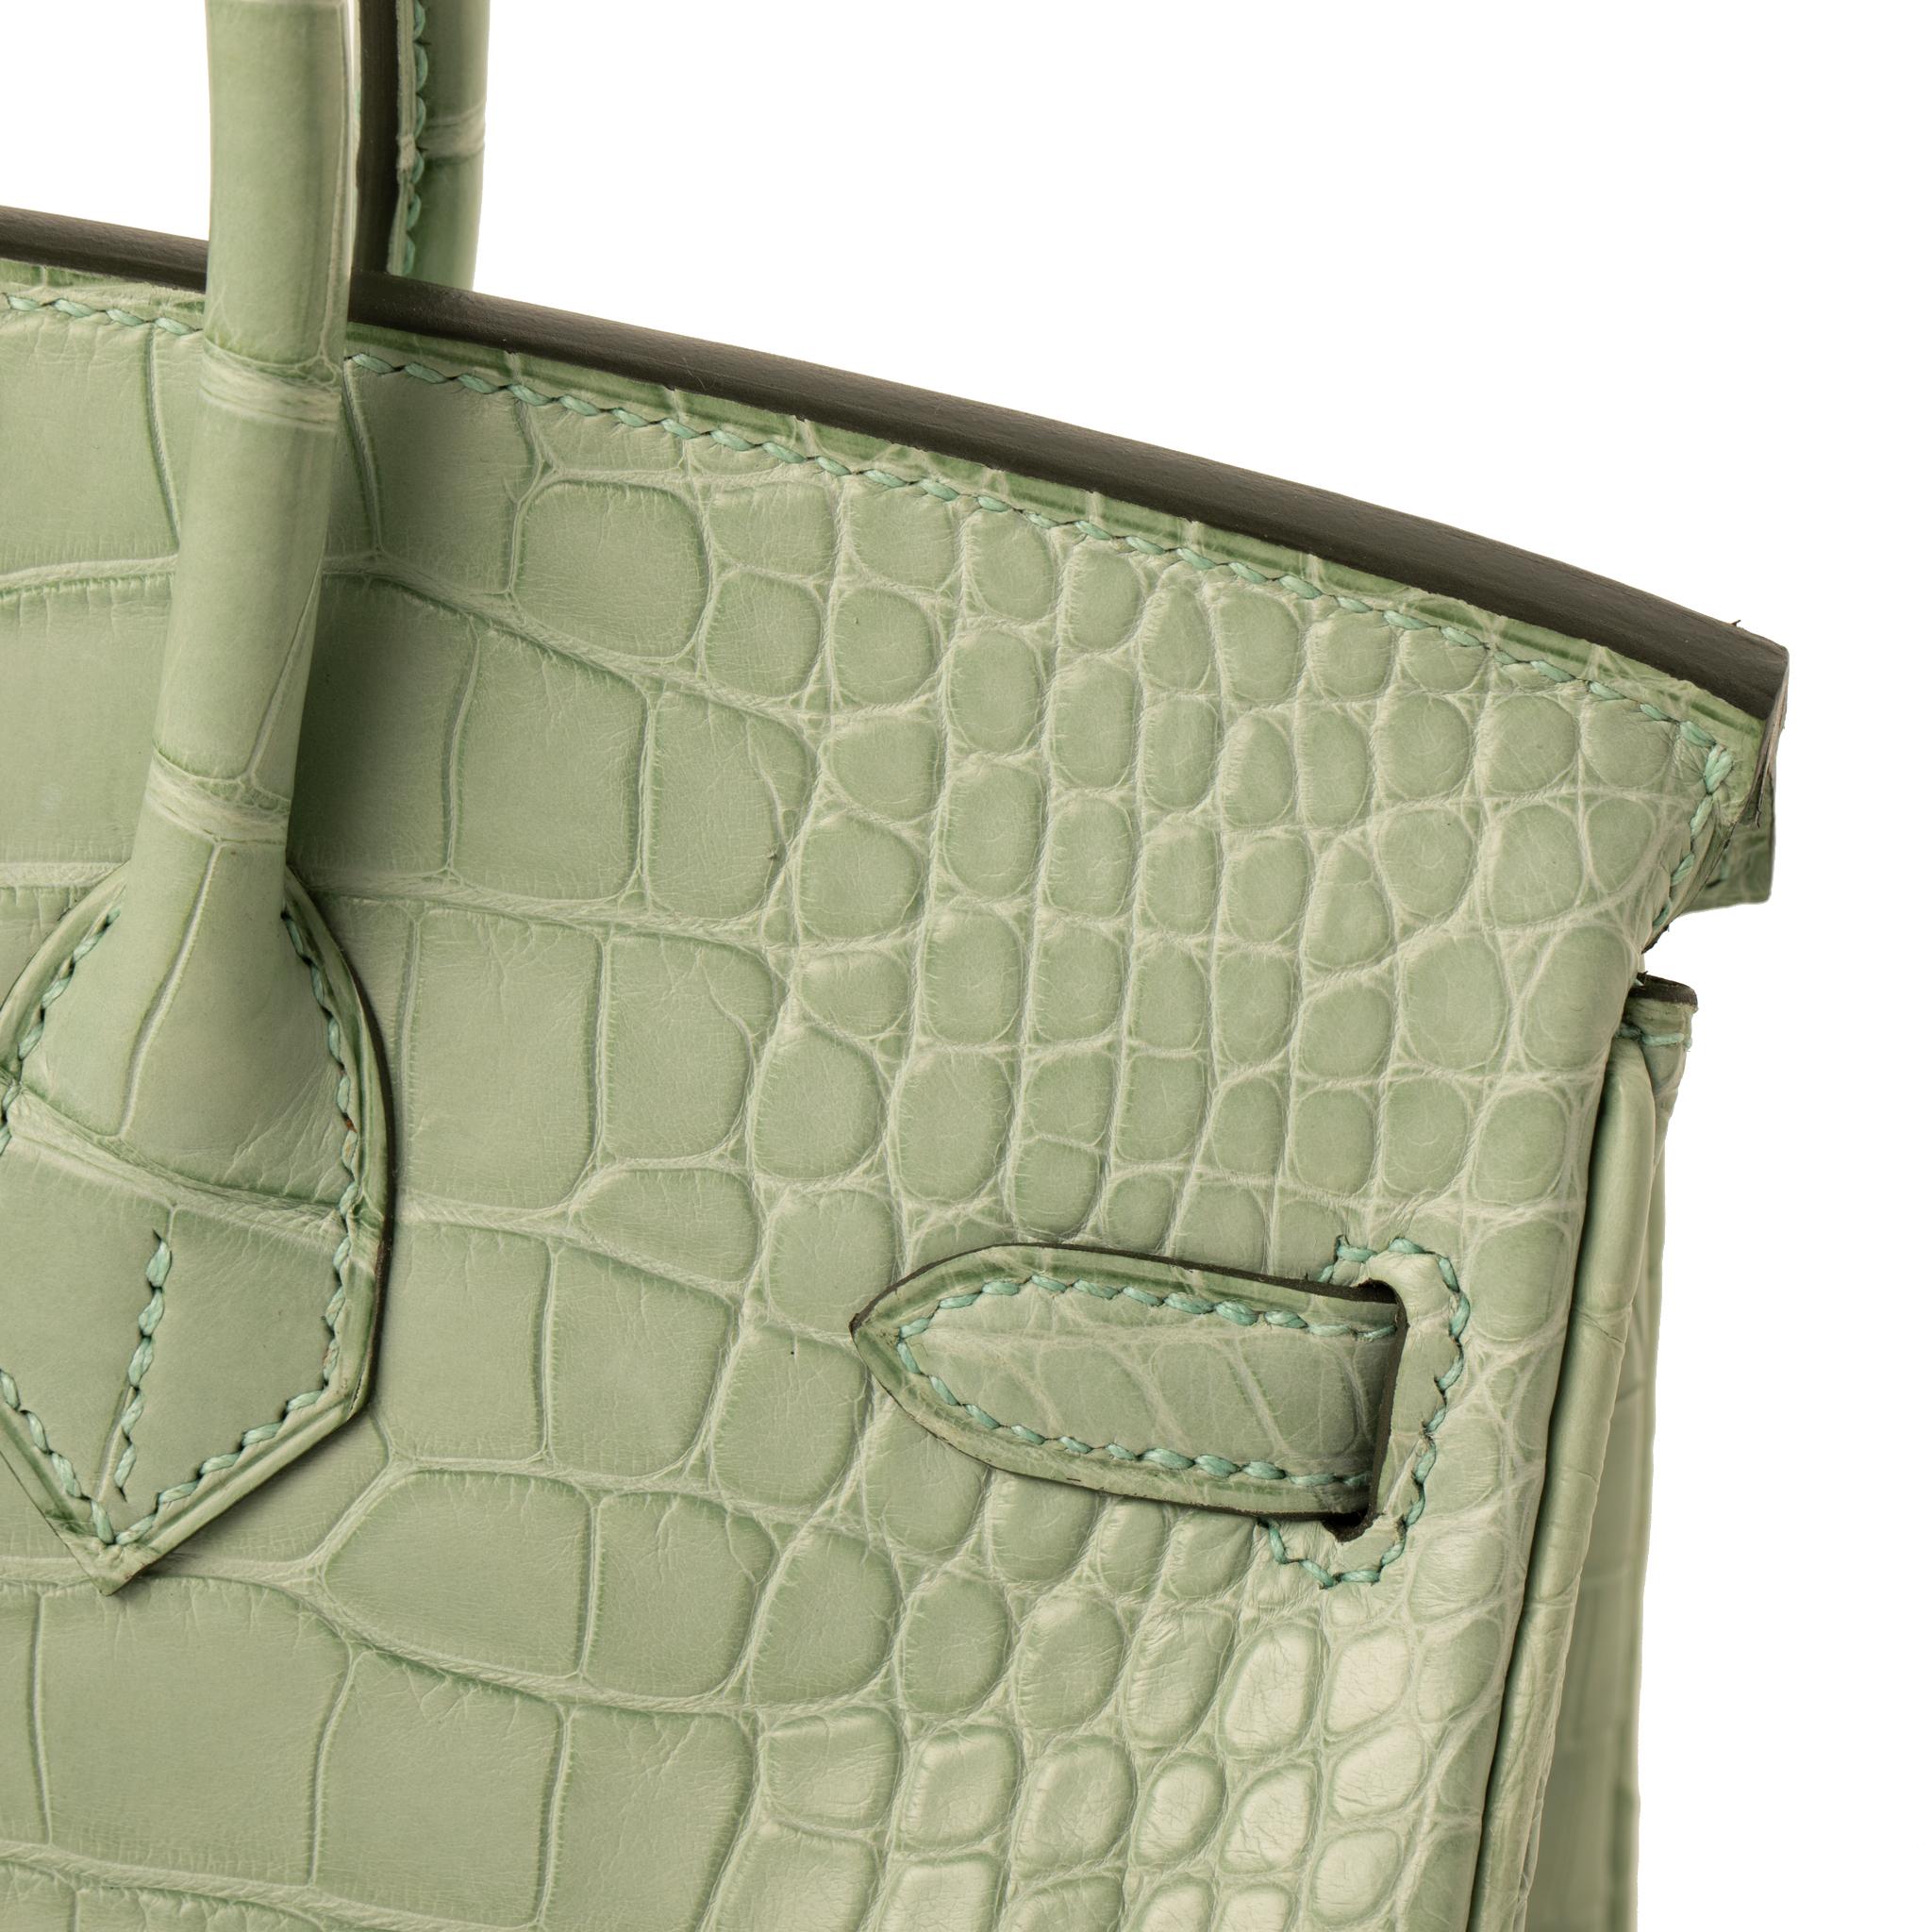 Hermès Birkin 25cm Vert D Eau Matte Alligator Palladium Hardware In New Condition In Sydney, New South Wales